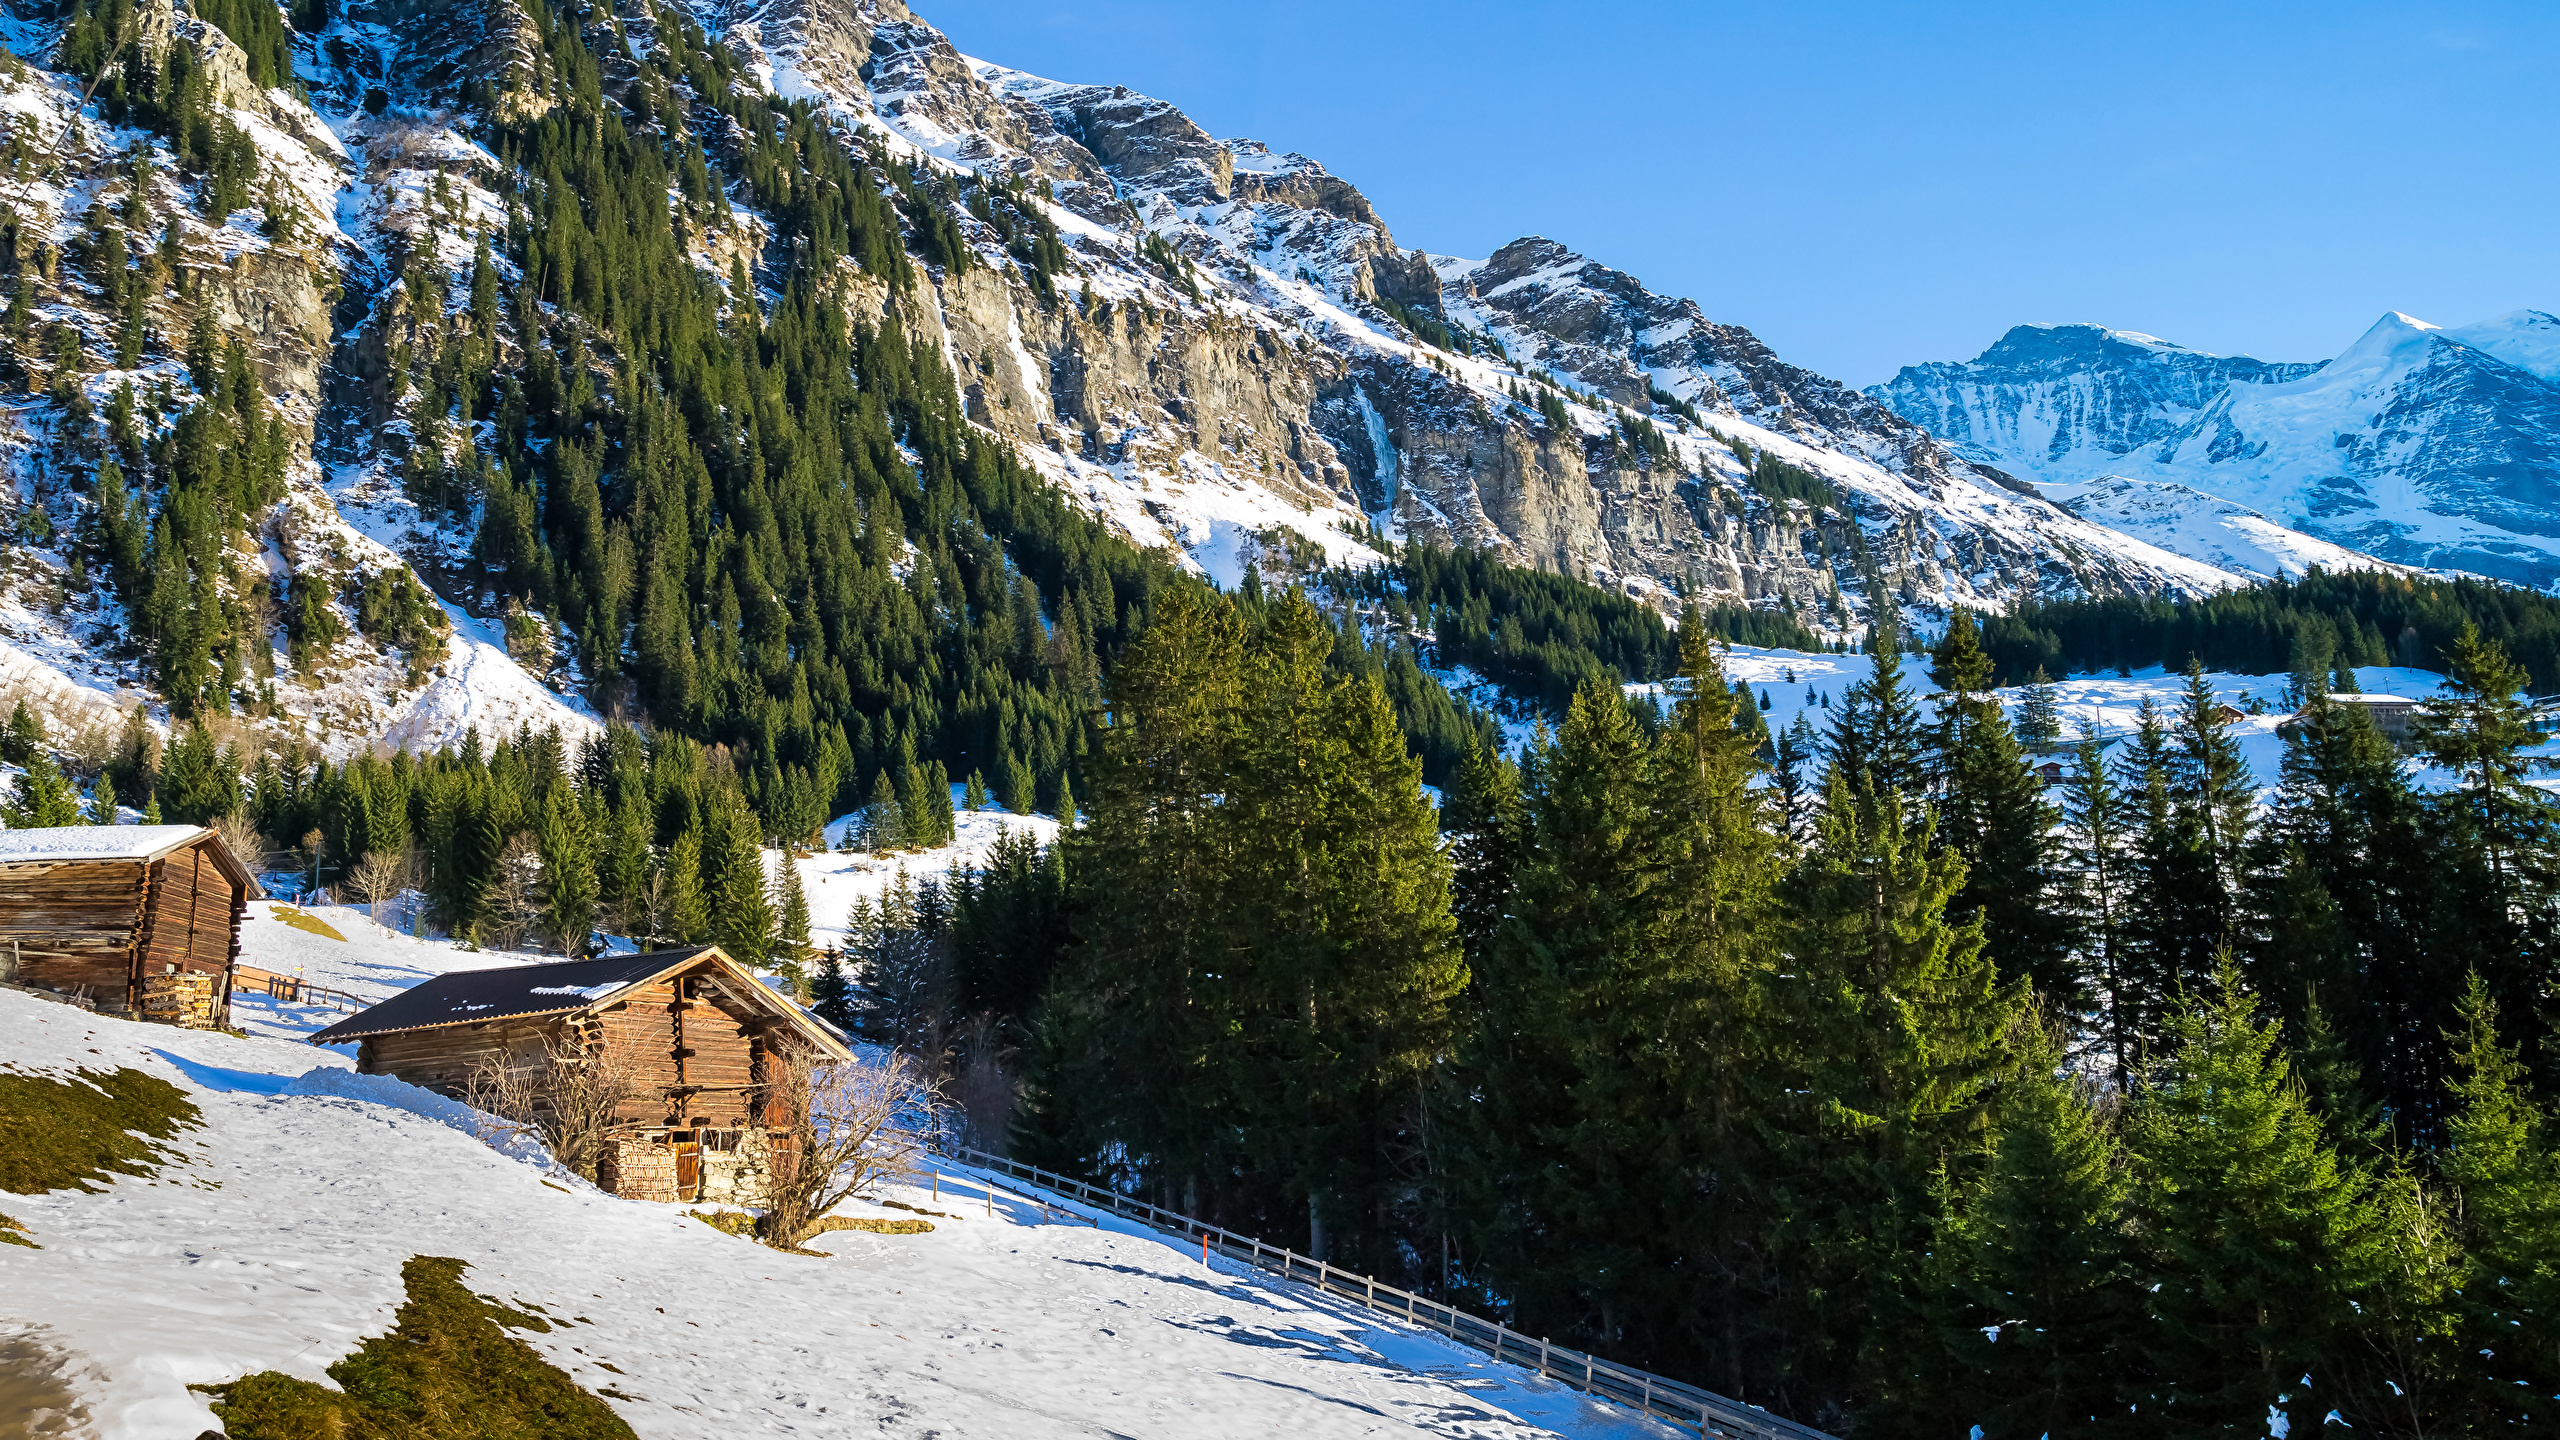 壁紙 2560x1440 スイス 山 冬 アルプス山脈 トウヒ属 雪 自然 ダウンロード 写真